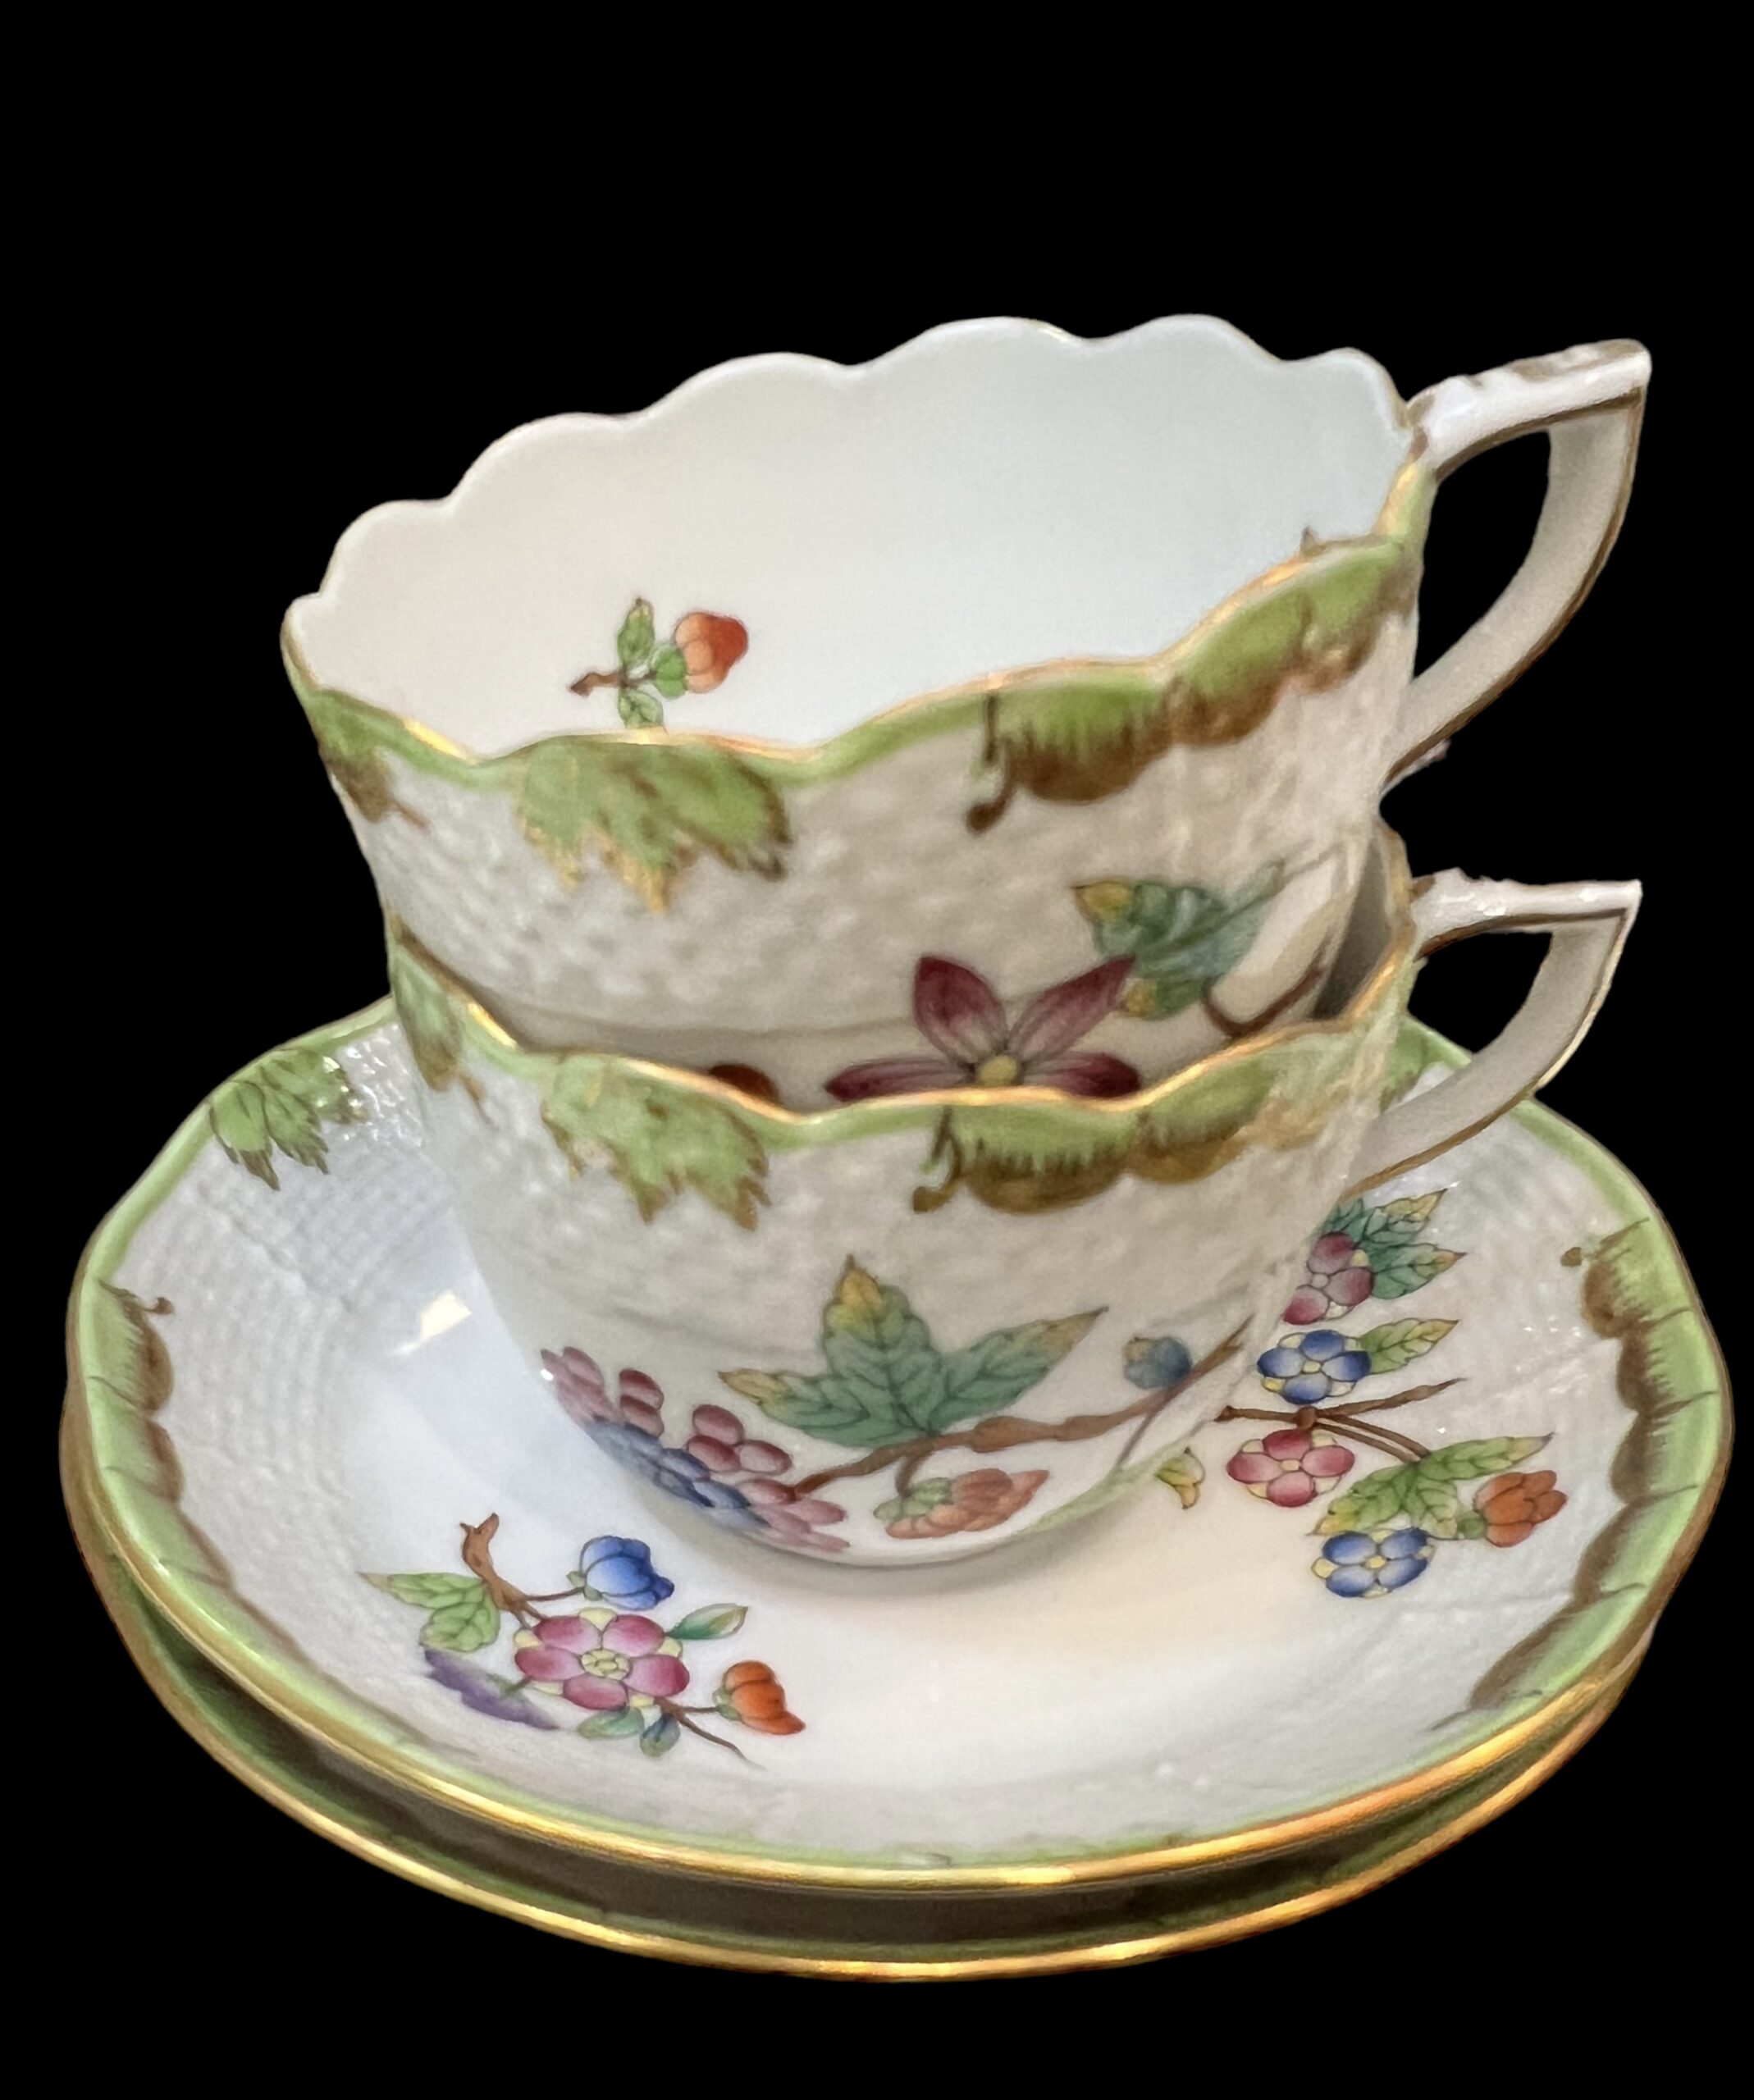 Herend Porcelain Dinnerware Queen Victoria